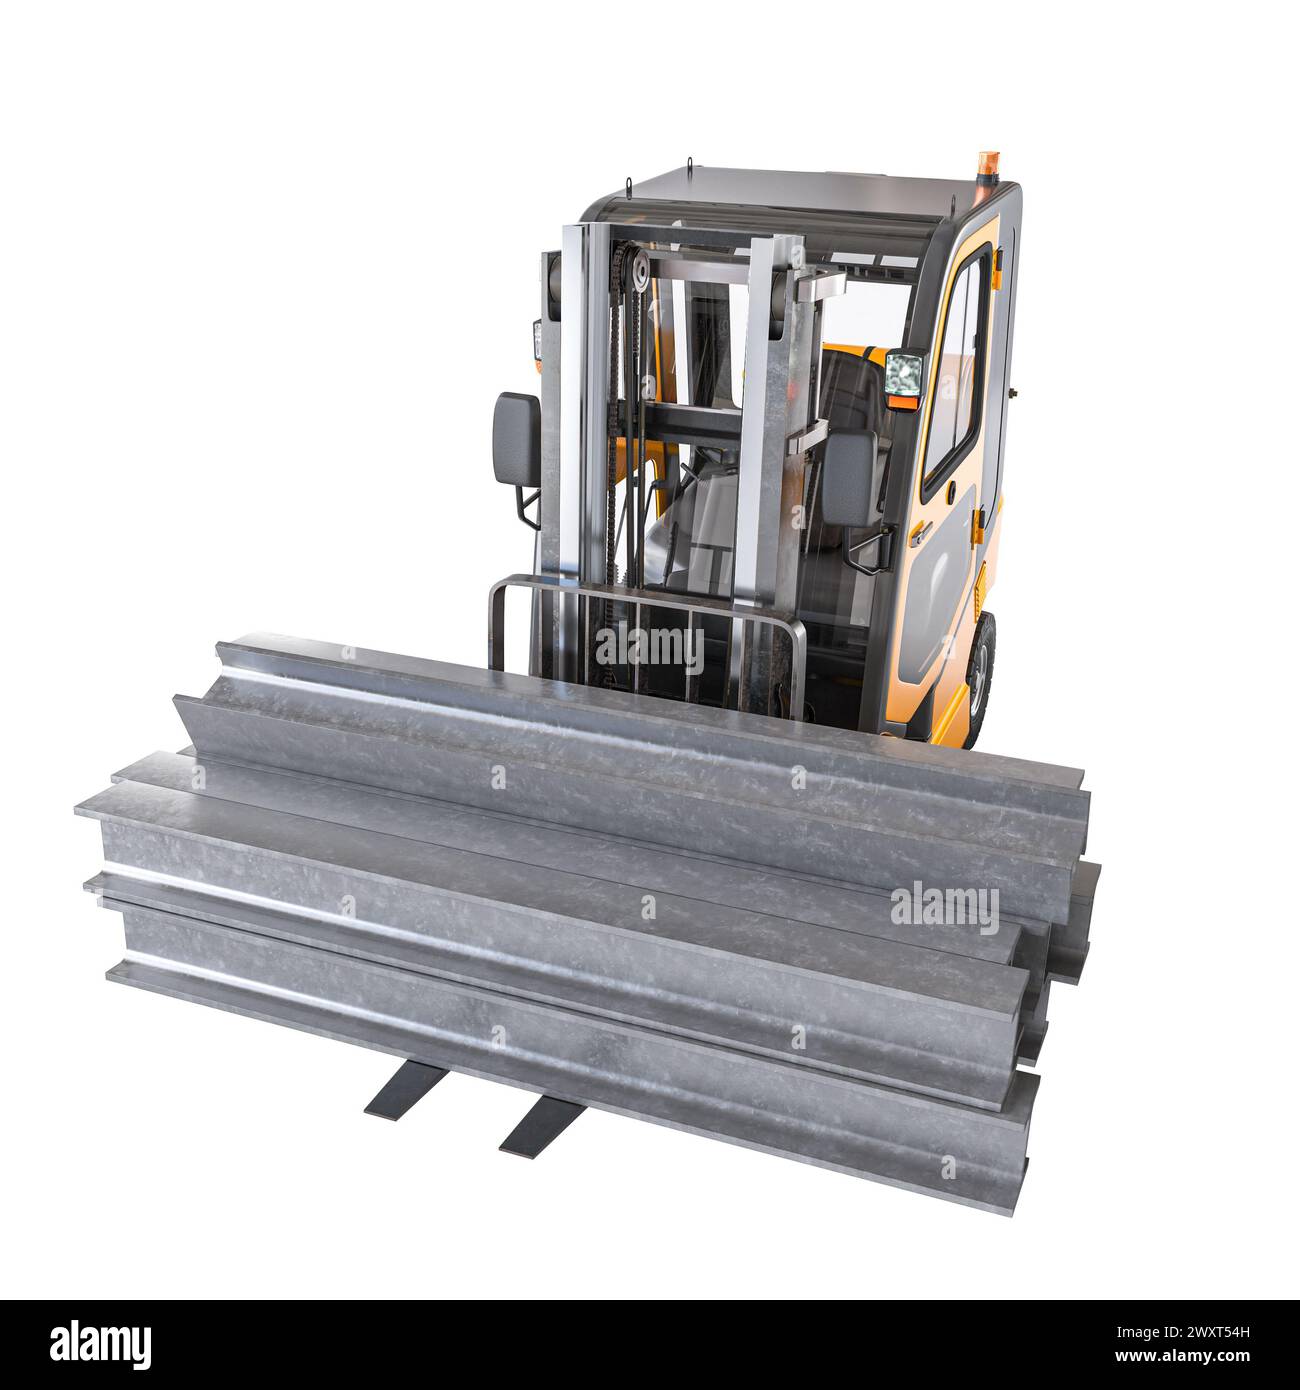 immagine 3d rappresentata di un carrello elevatore a forche in preparazione allo spostamento di travi in acciaio pesanti Foto Stock